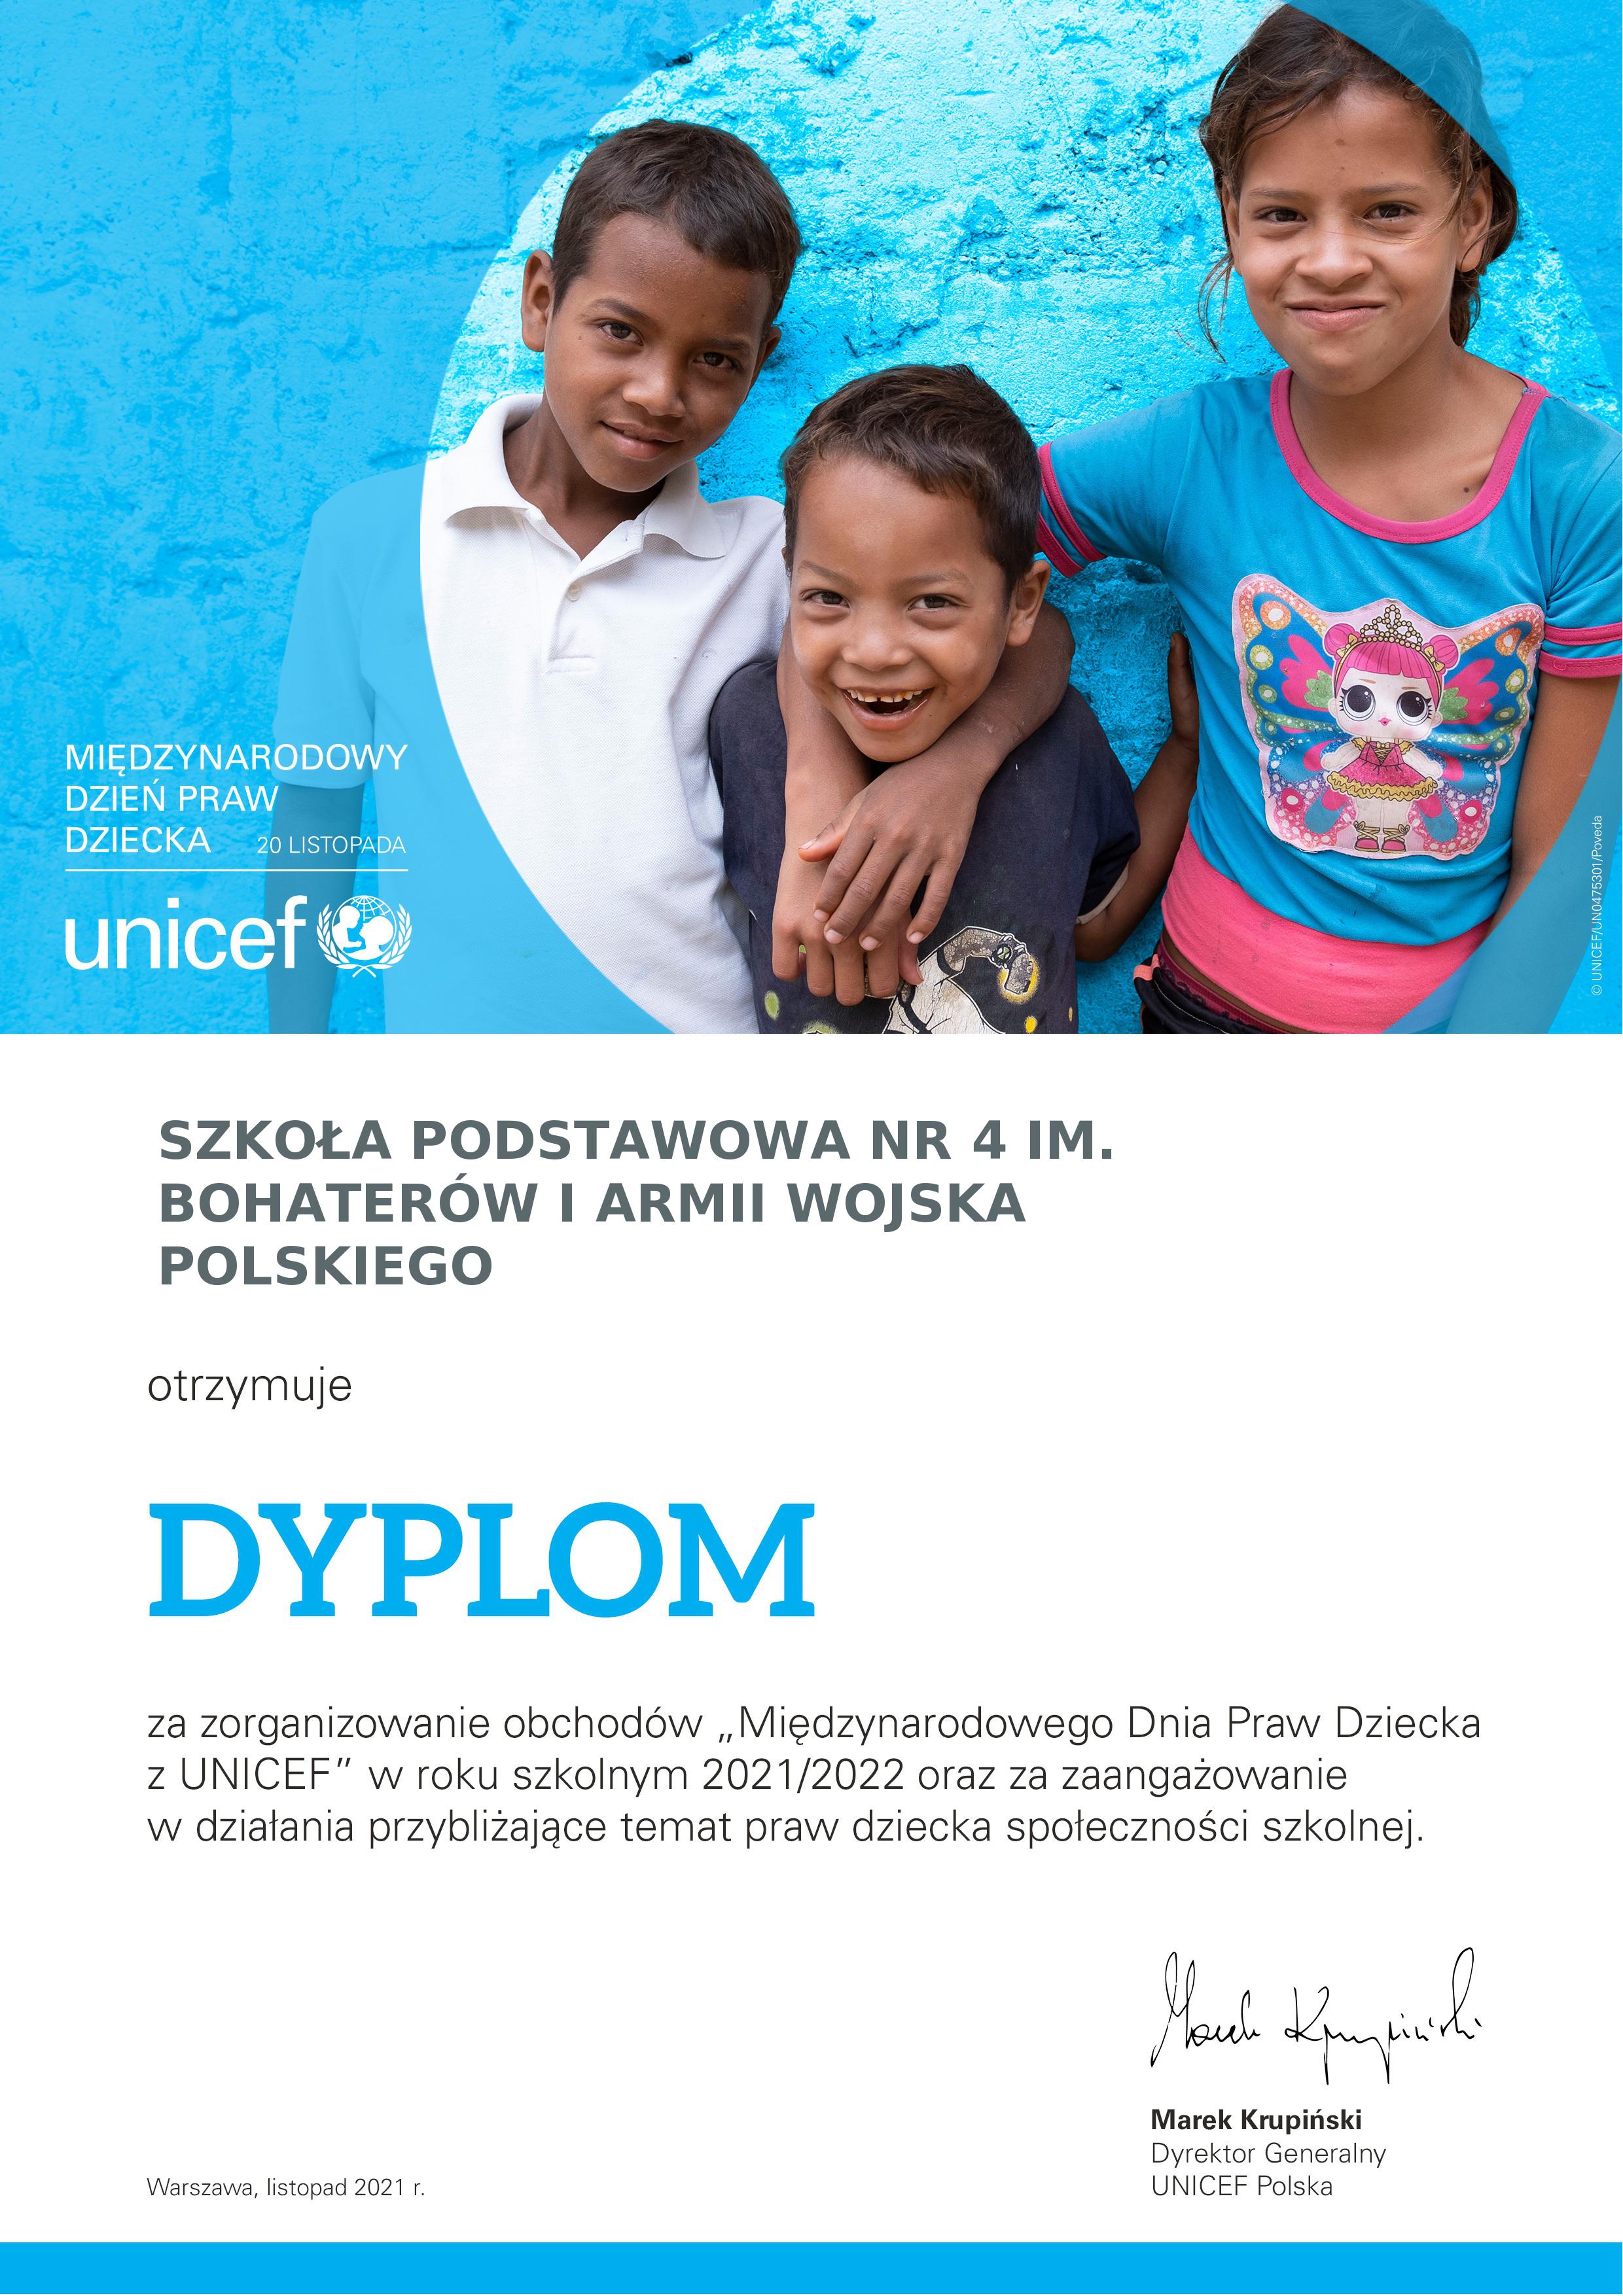 dyplom wręczony szkole przez UNICEF